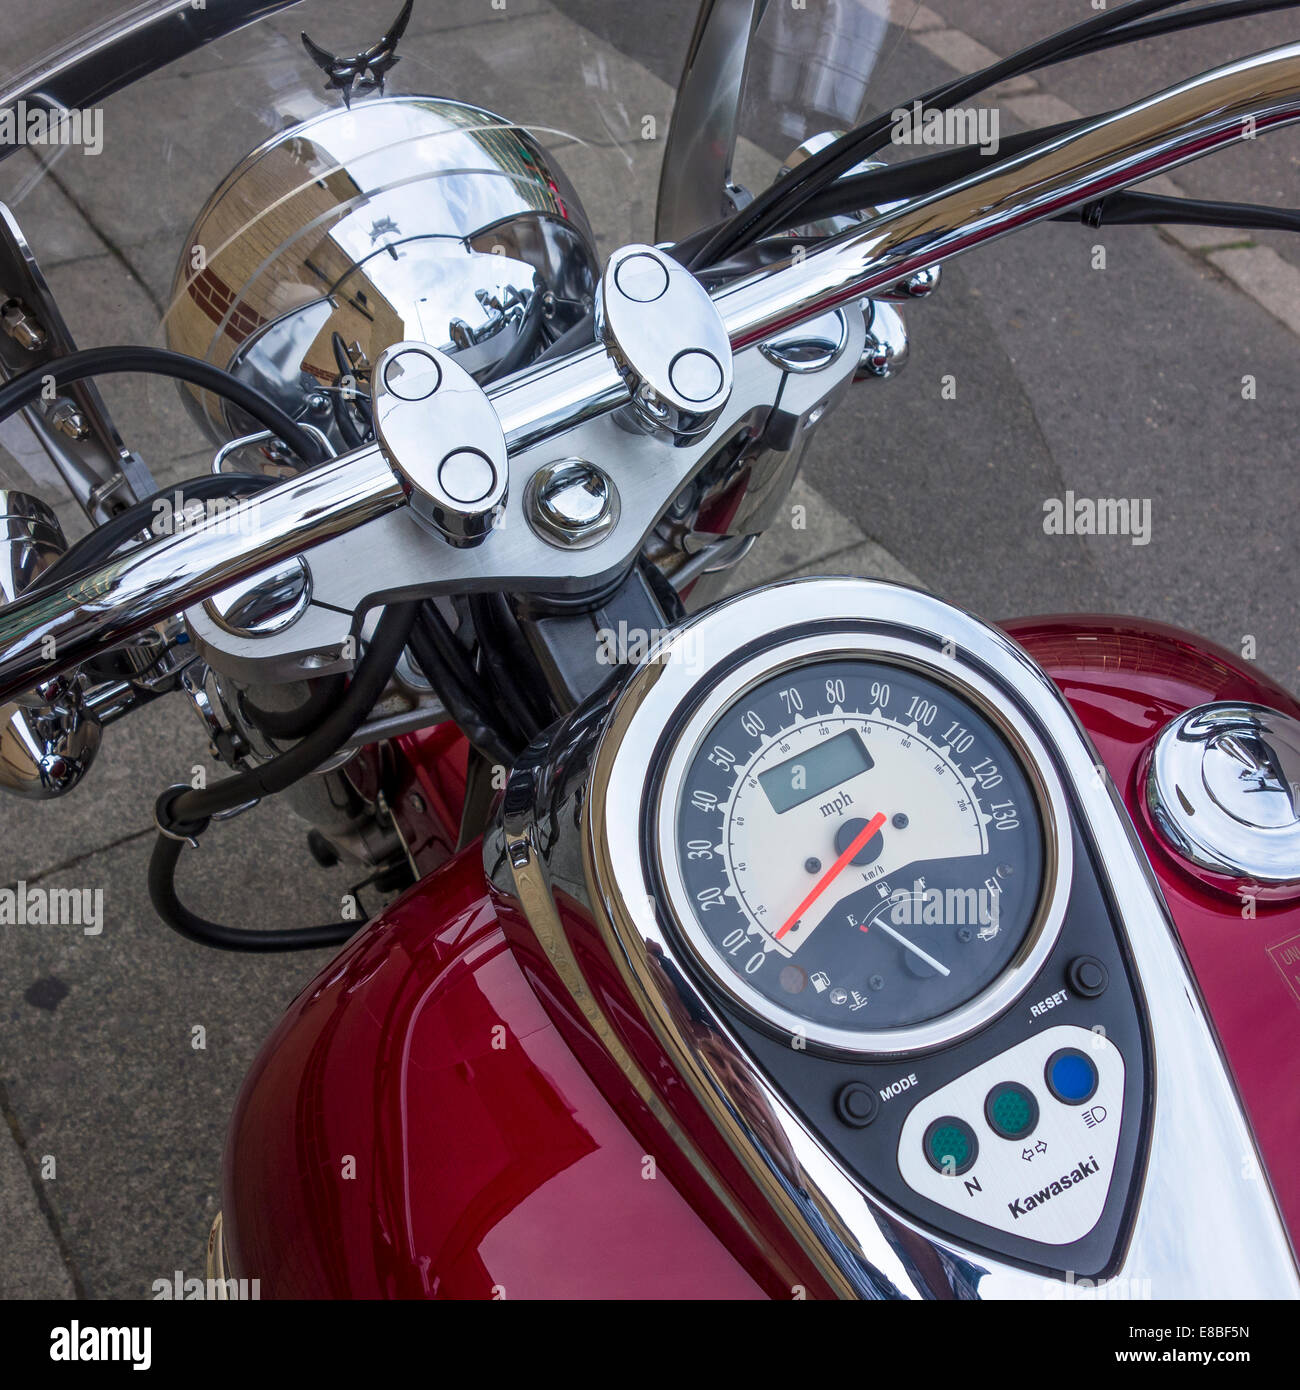 Motorrad-Instrumententafel. Tachometer Und Drehzahlmesser Aus Nächster  Nähe. Lizenzfreie Fotos, Bilder und Stock Fotografie. Image 158081125.